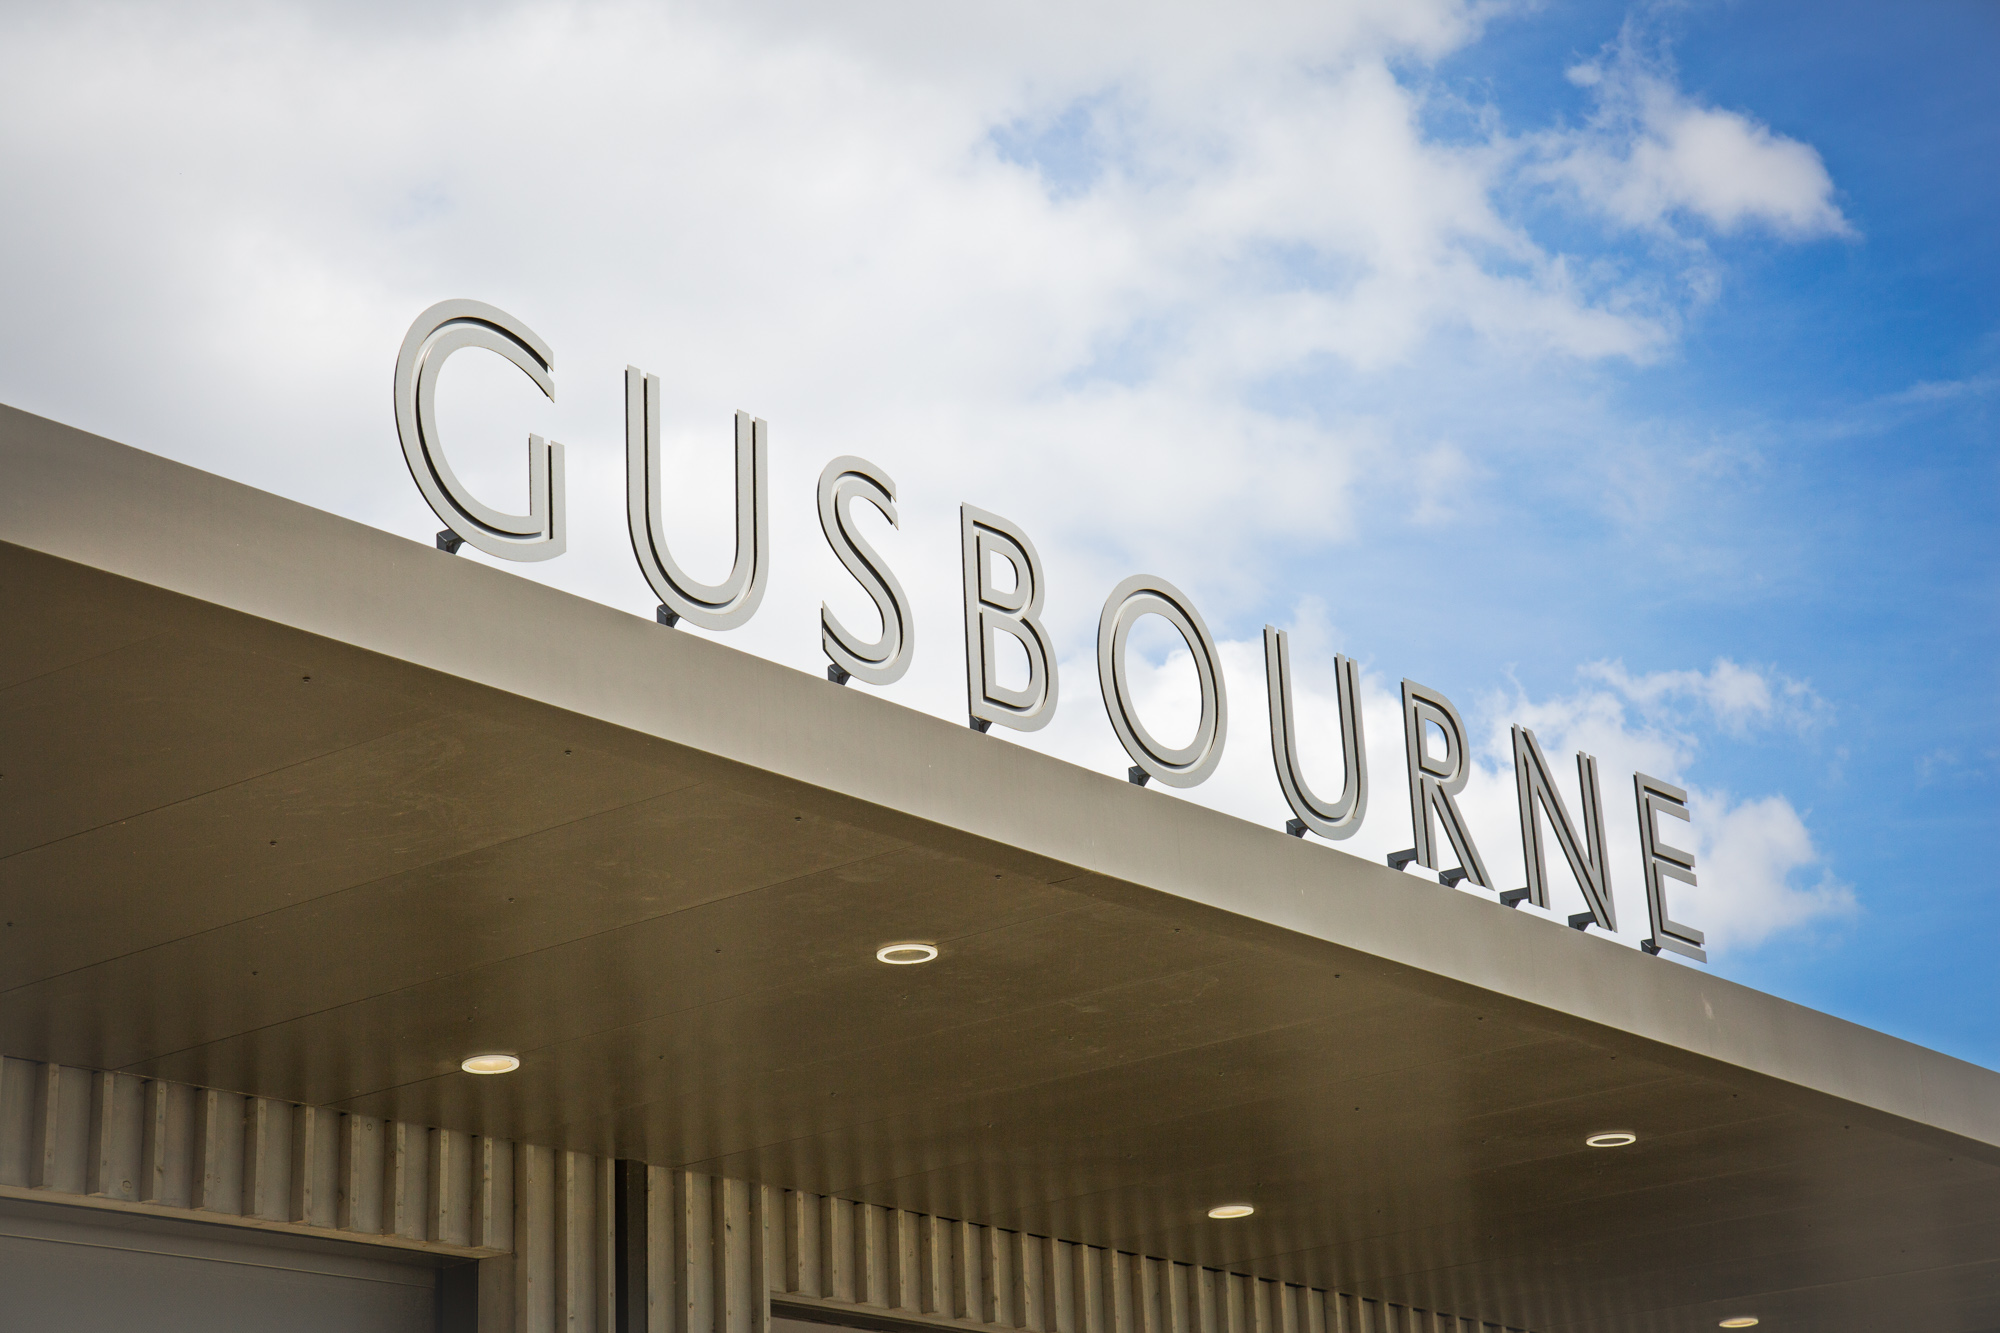 Gusbourne estate sign